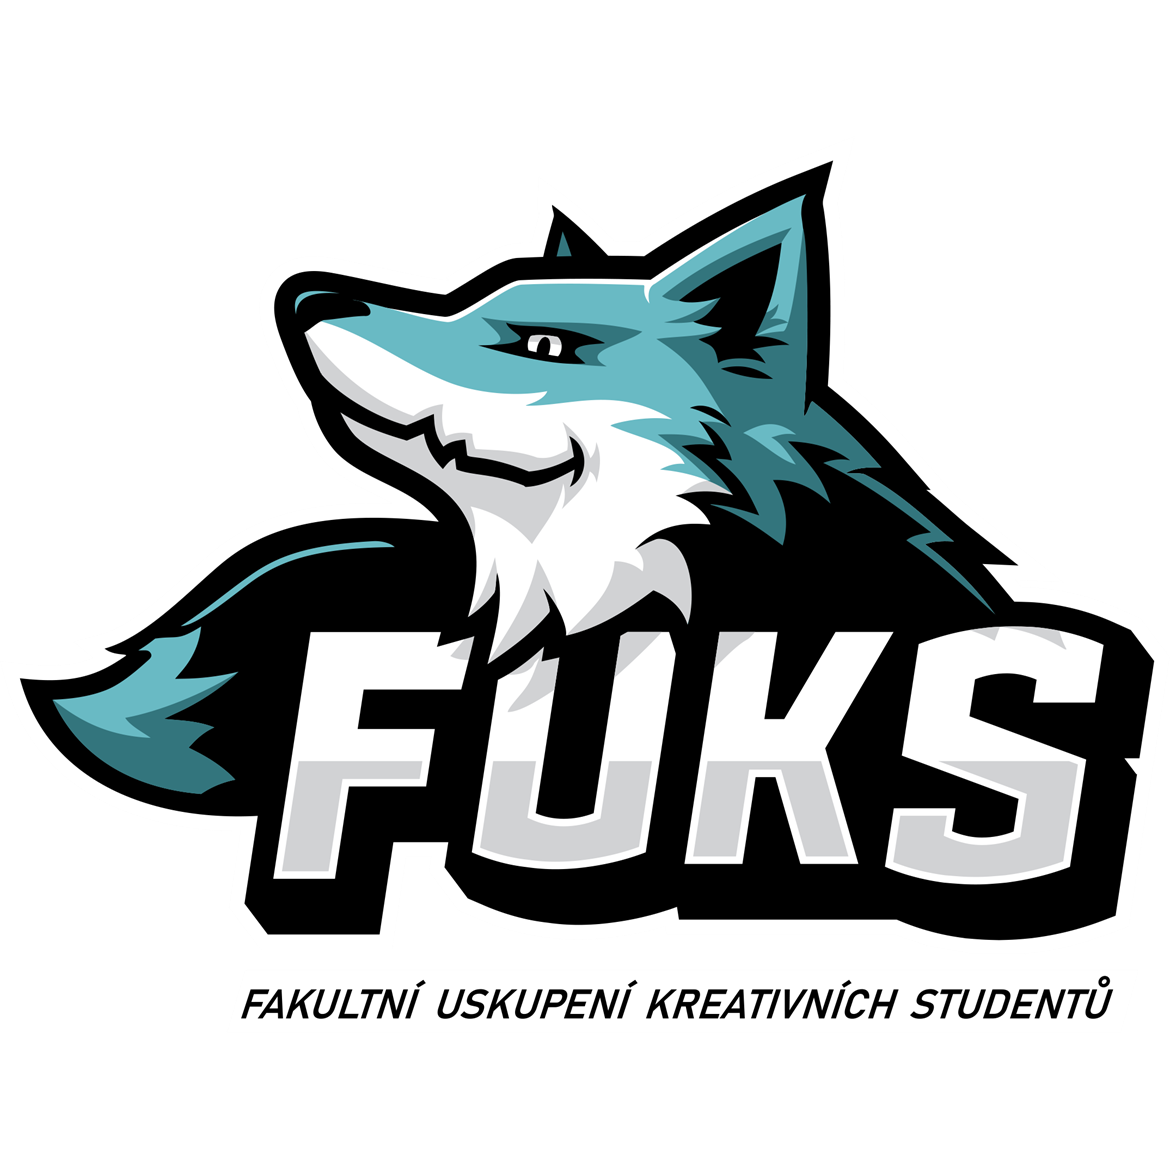 Fakultní uskupení kreativních studentů (FUKS)